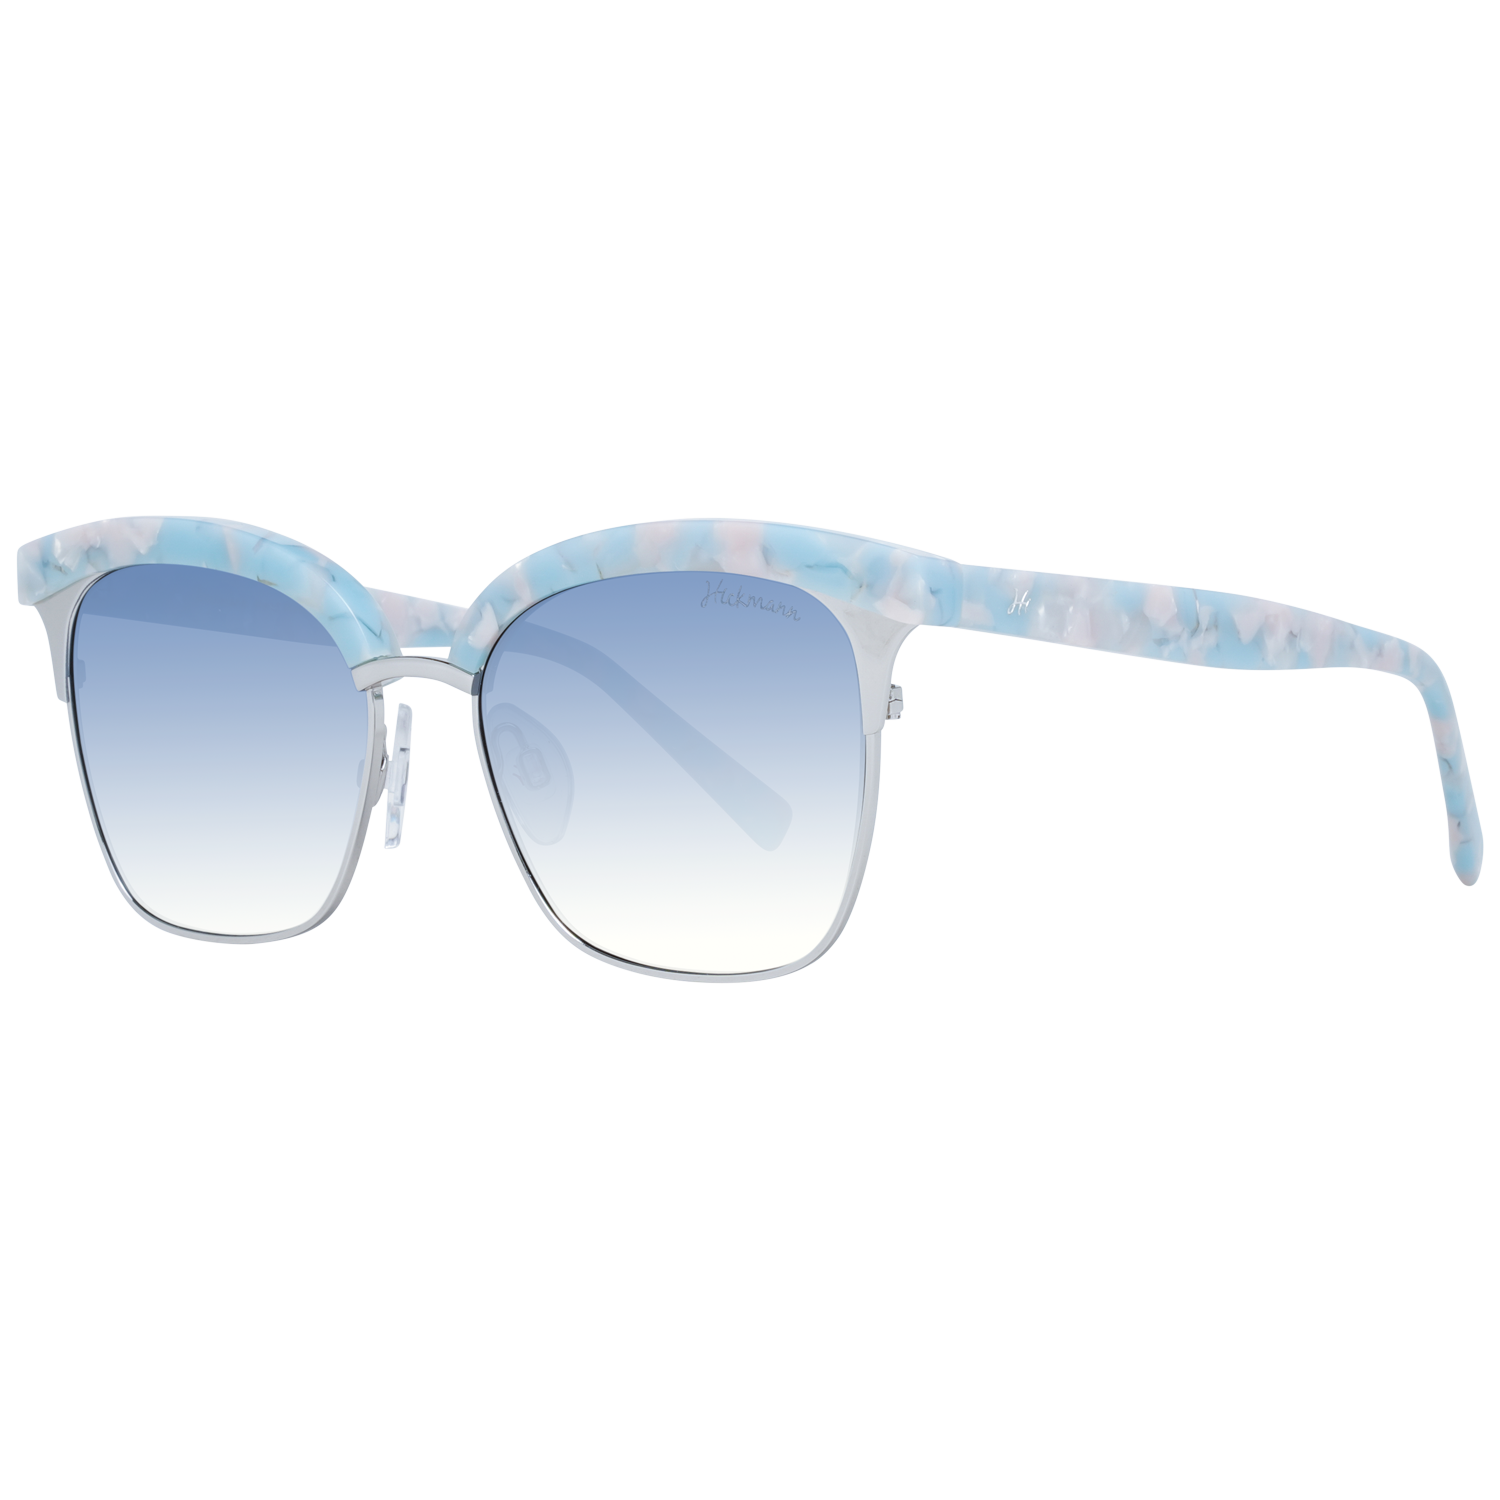 Dámské sluneční brýle Ana Hickmann HI3051 G21 53